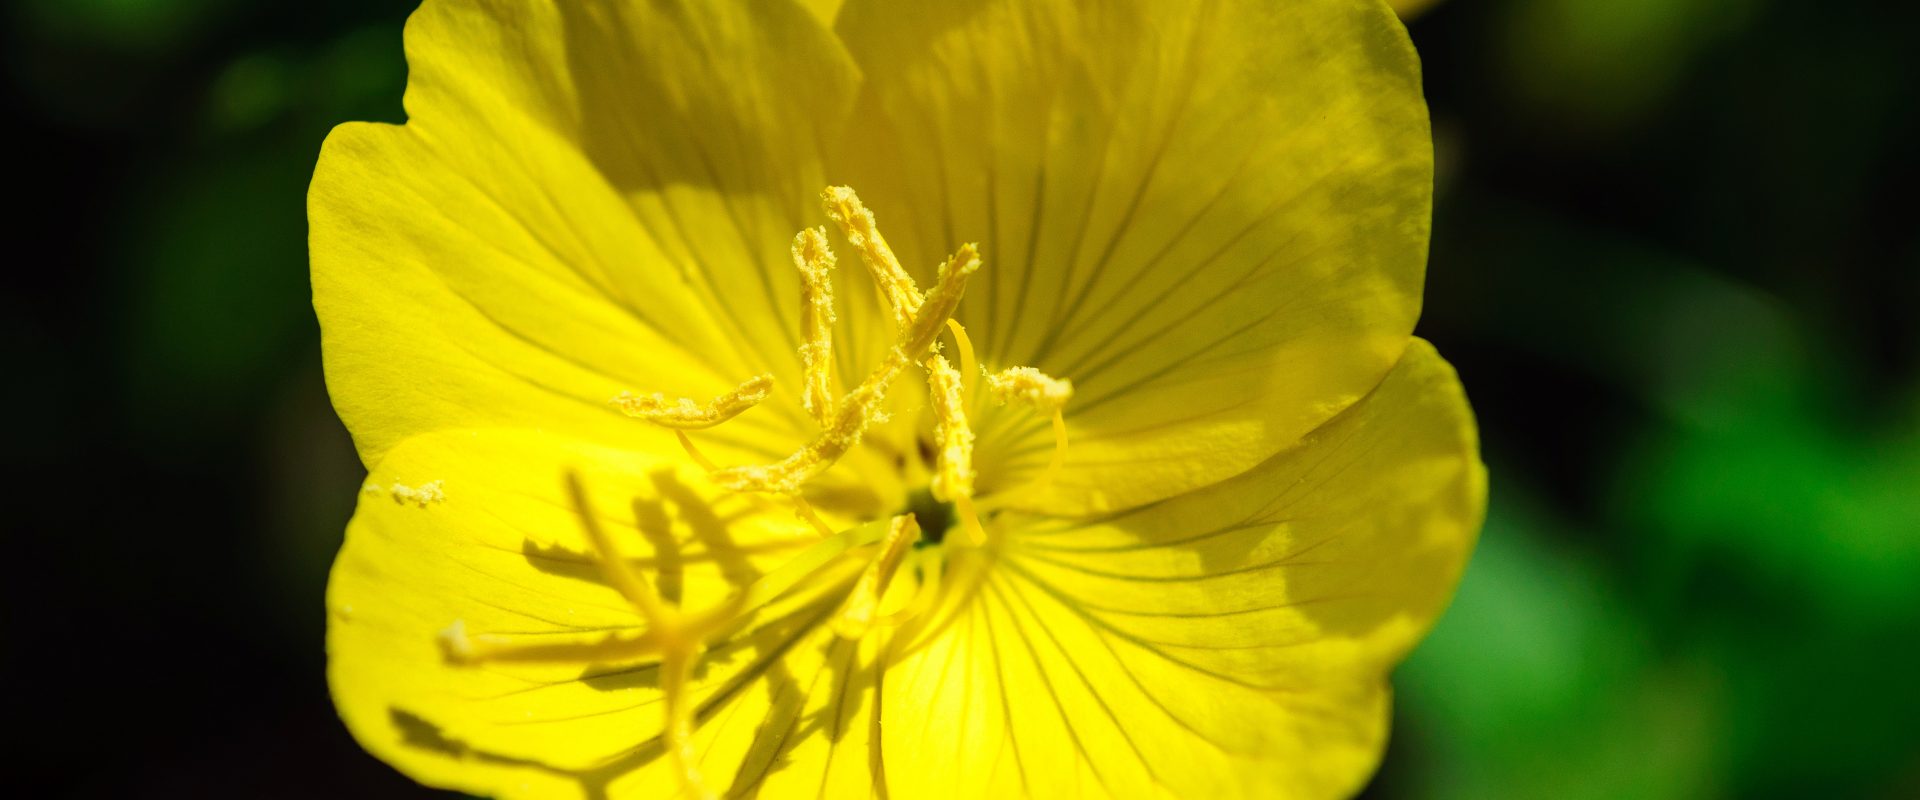 Wiesiołek - właściwości, działanie i zastosowanie. Zbliżenie na żółty kwiat wiesiołka na łące.